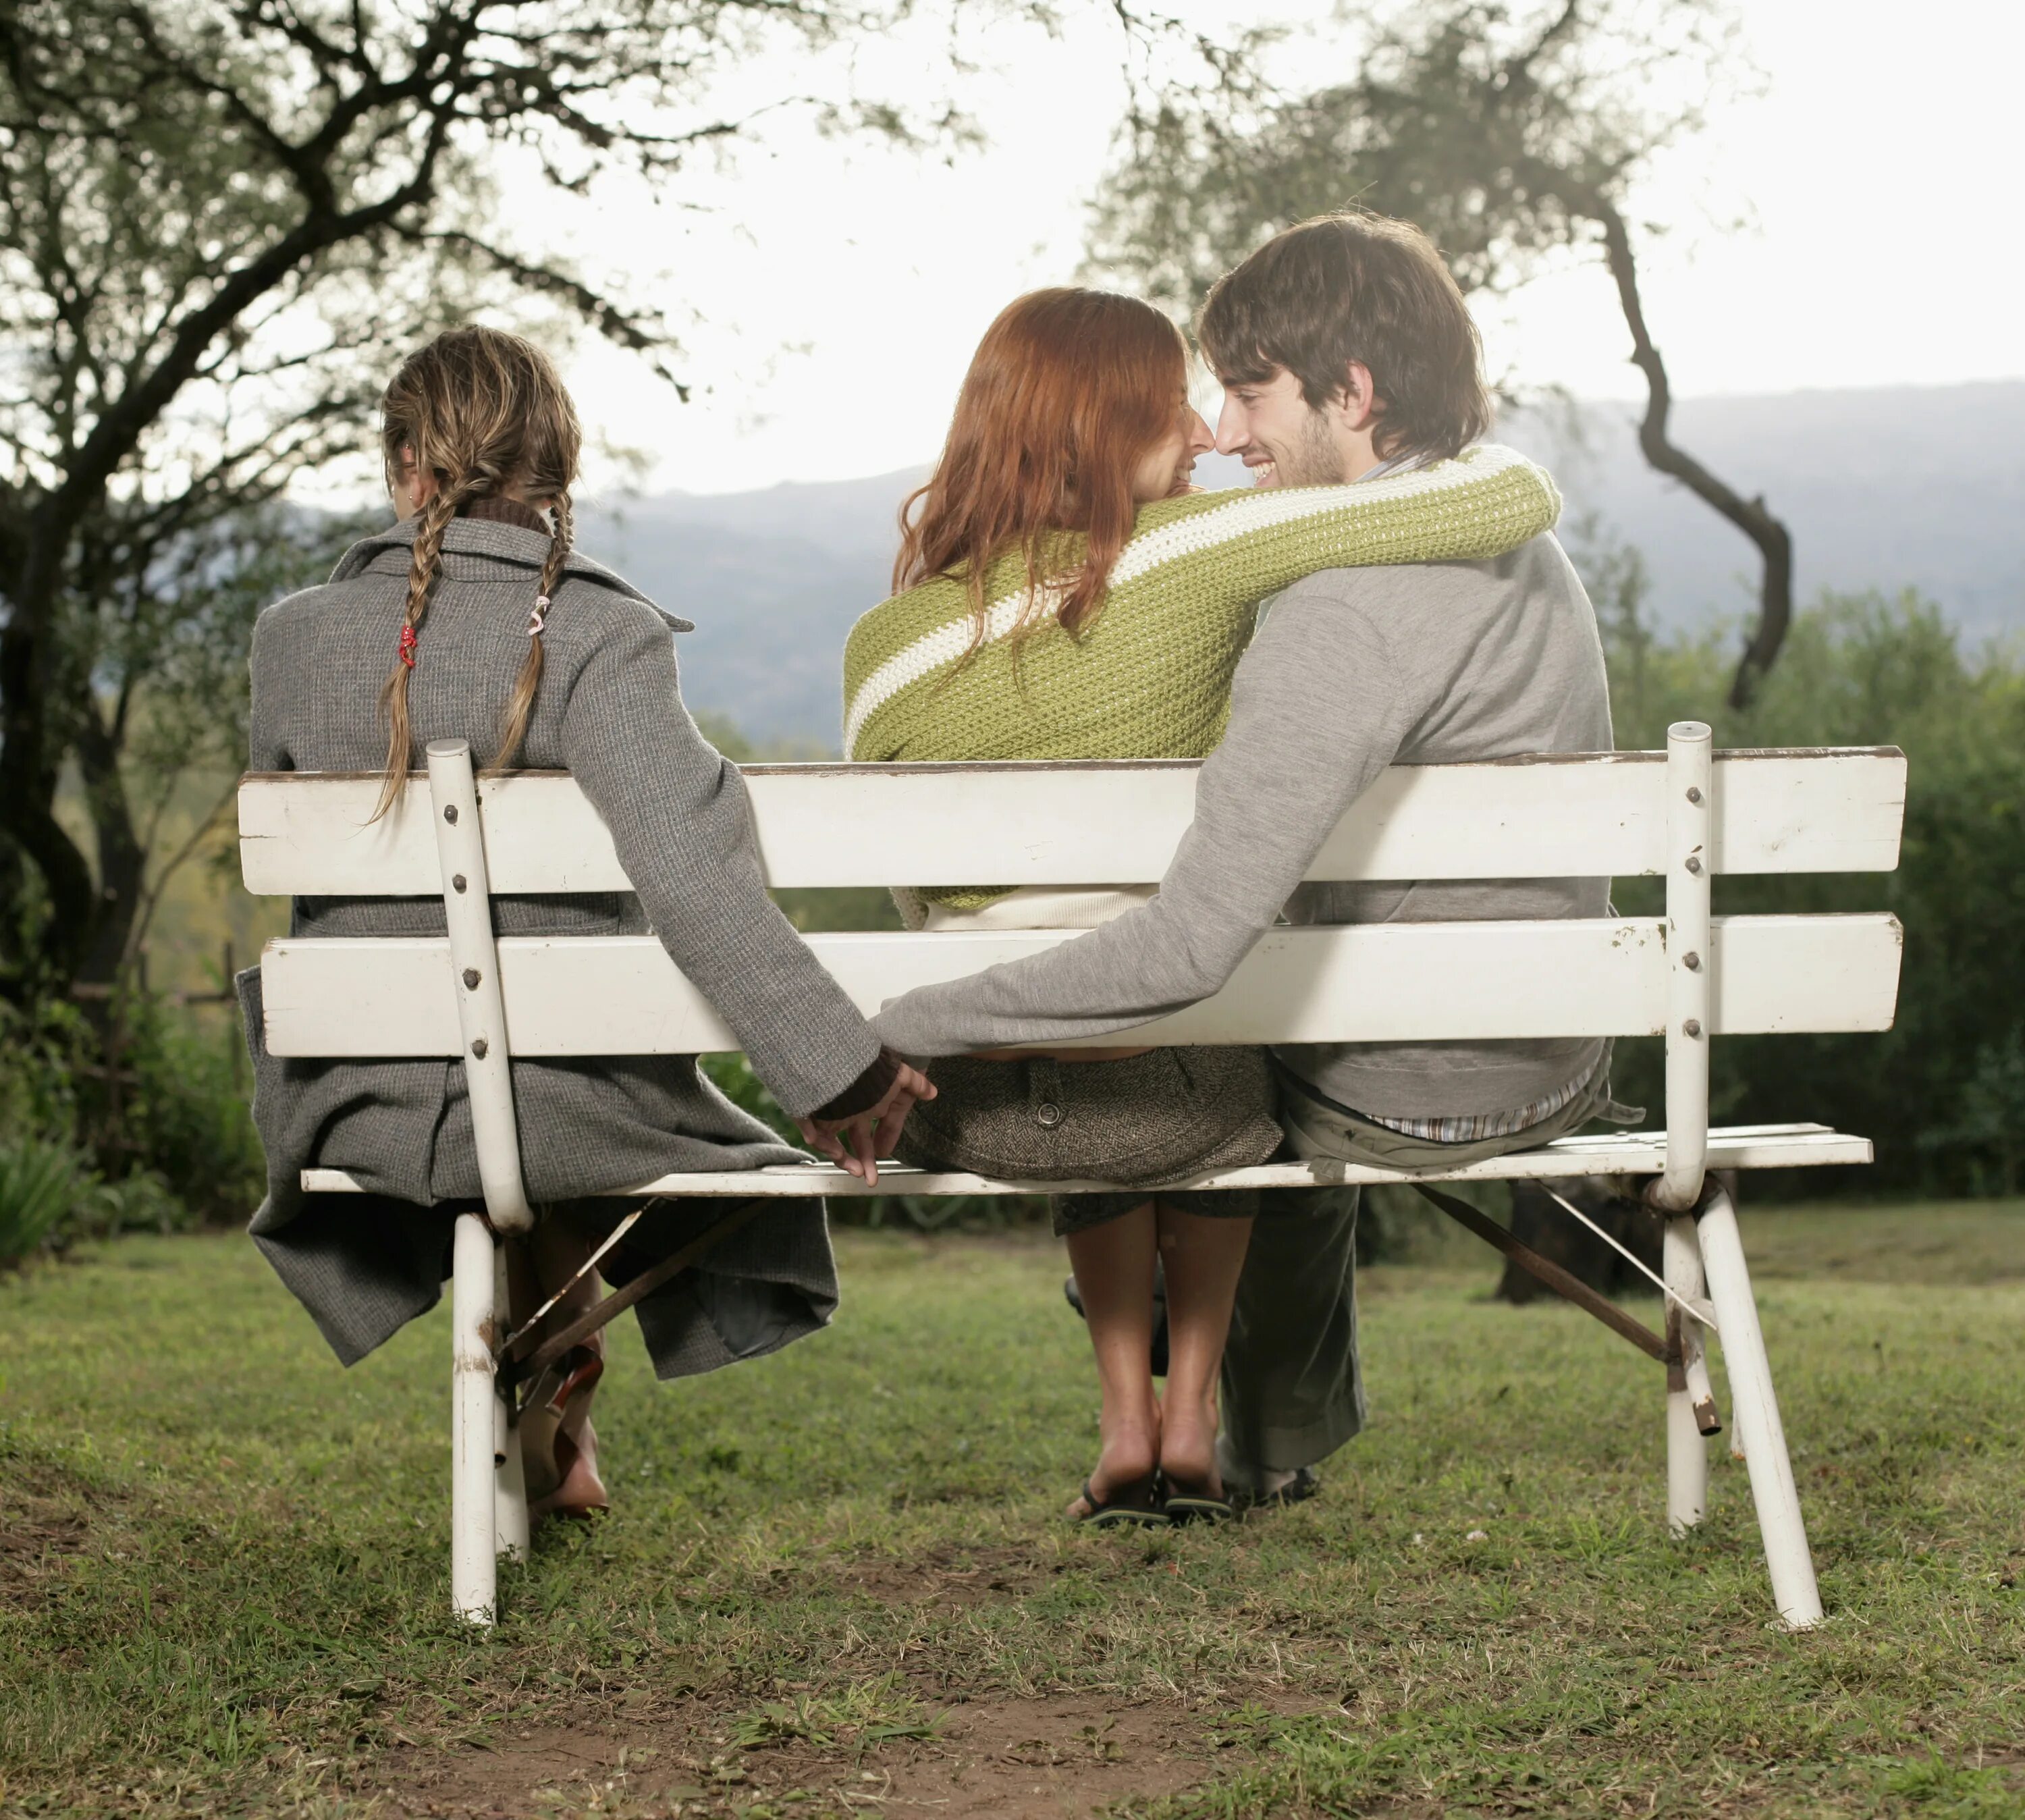 Любовь и измены слушать. Любовный треугольник. Мужчина и женщина на скамейке. Третий в отношениях. Трое на лавочке.